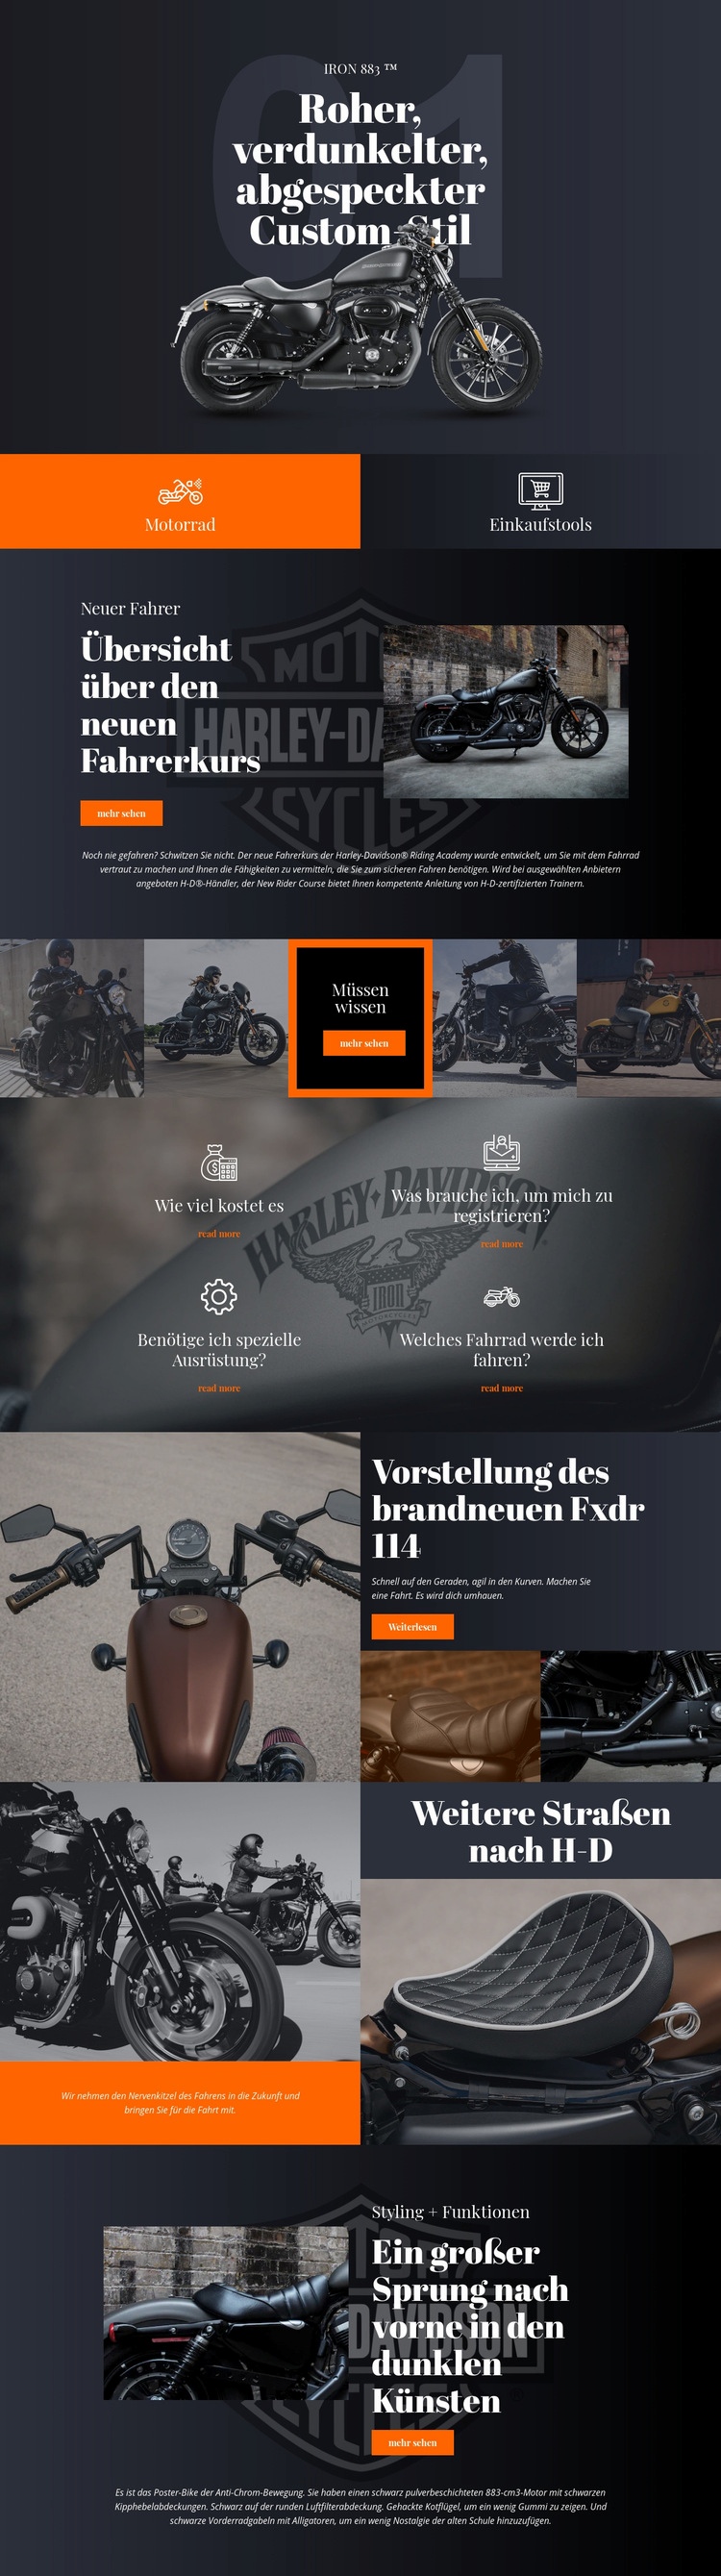 Harley Davidson Website design